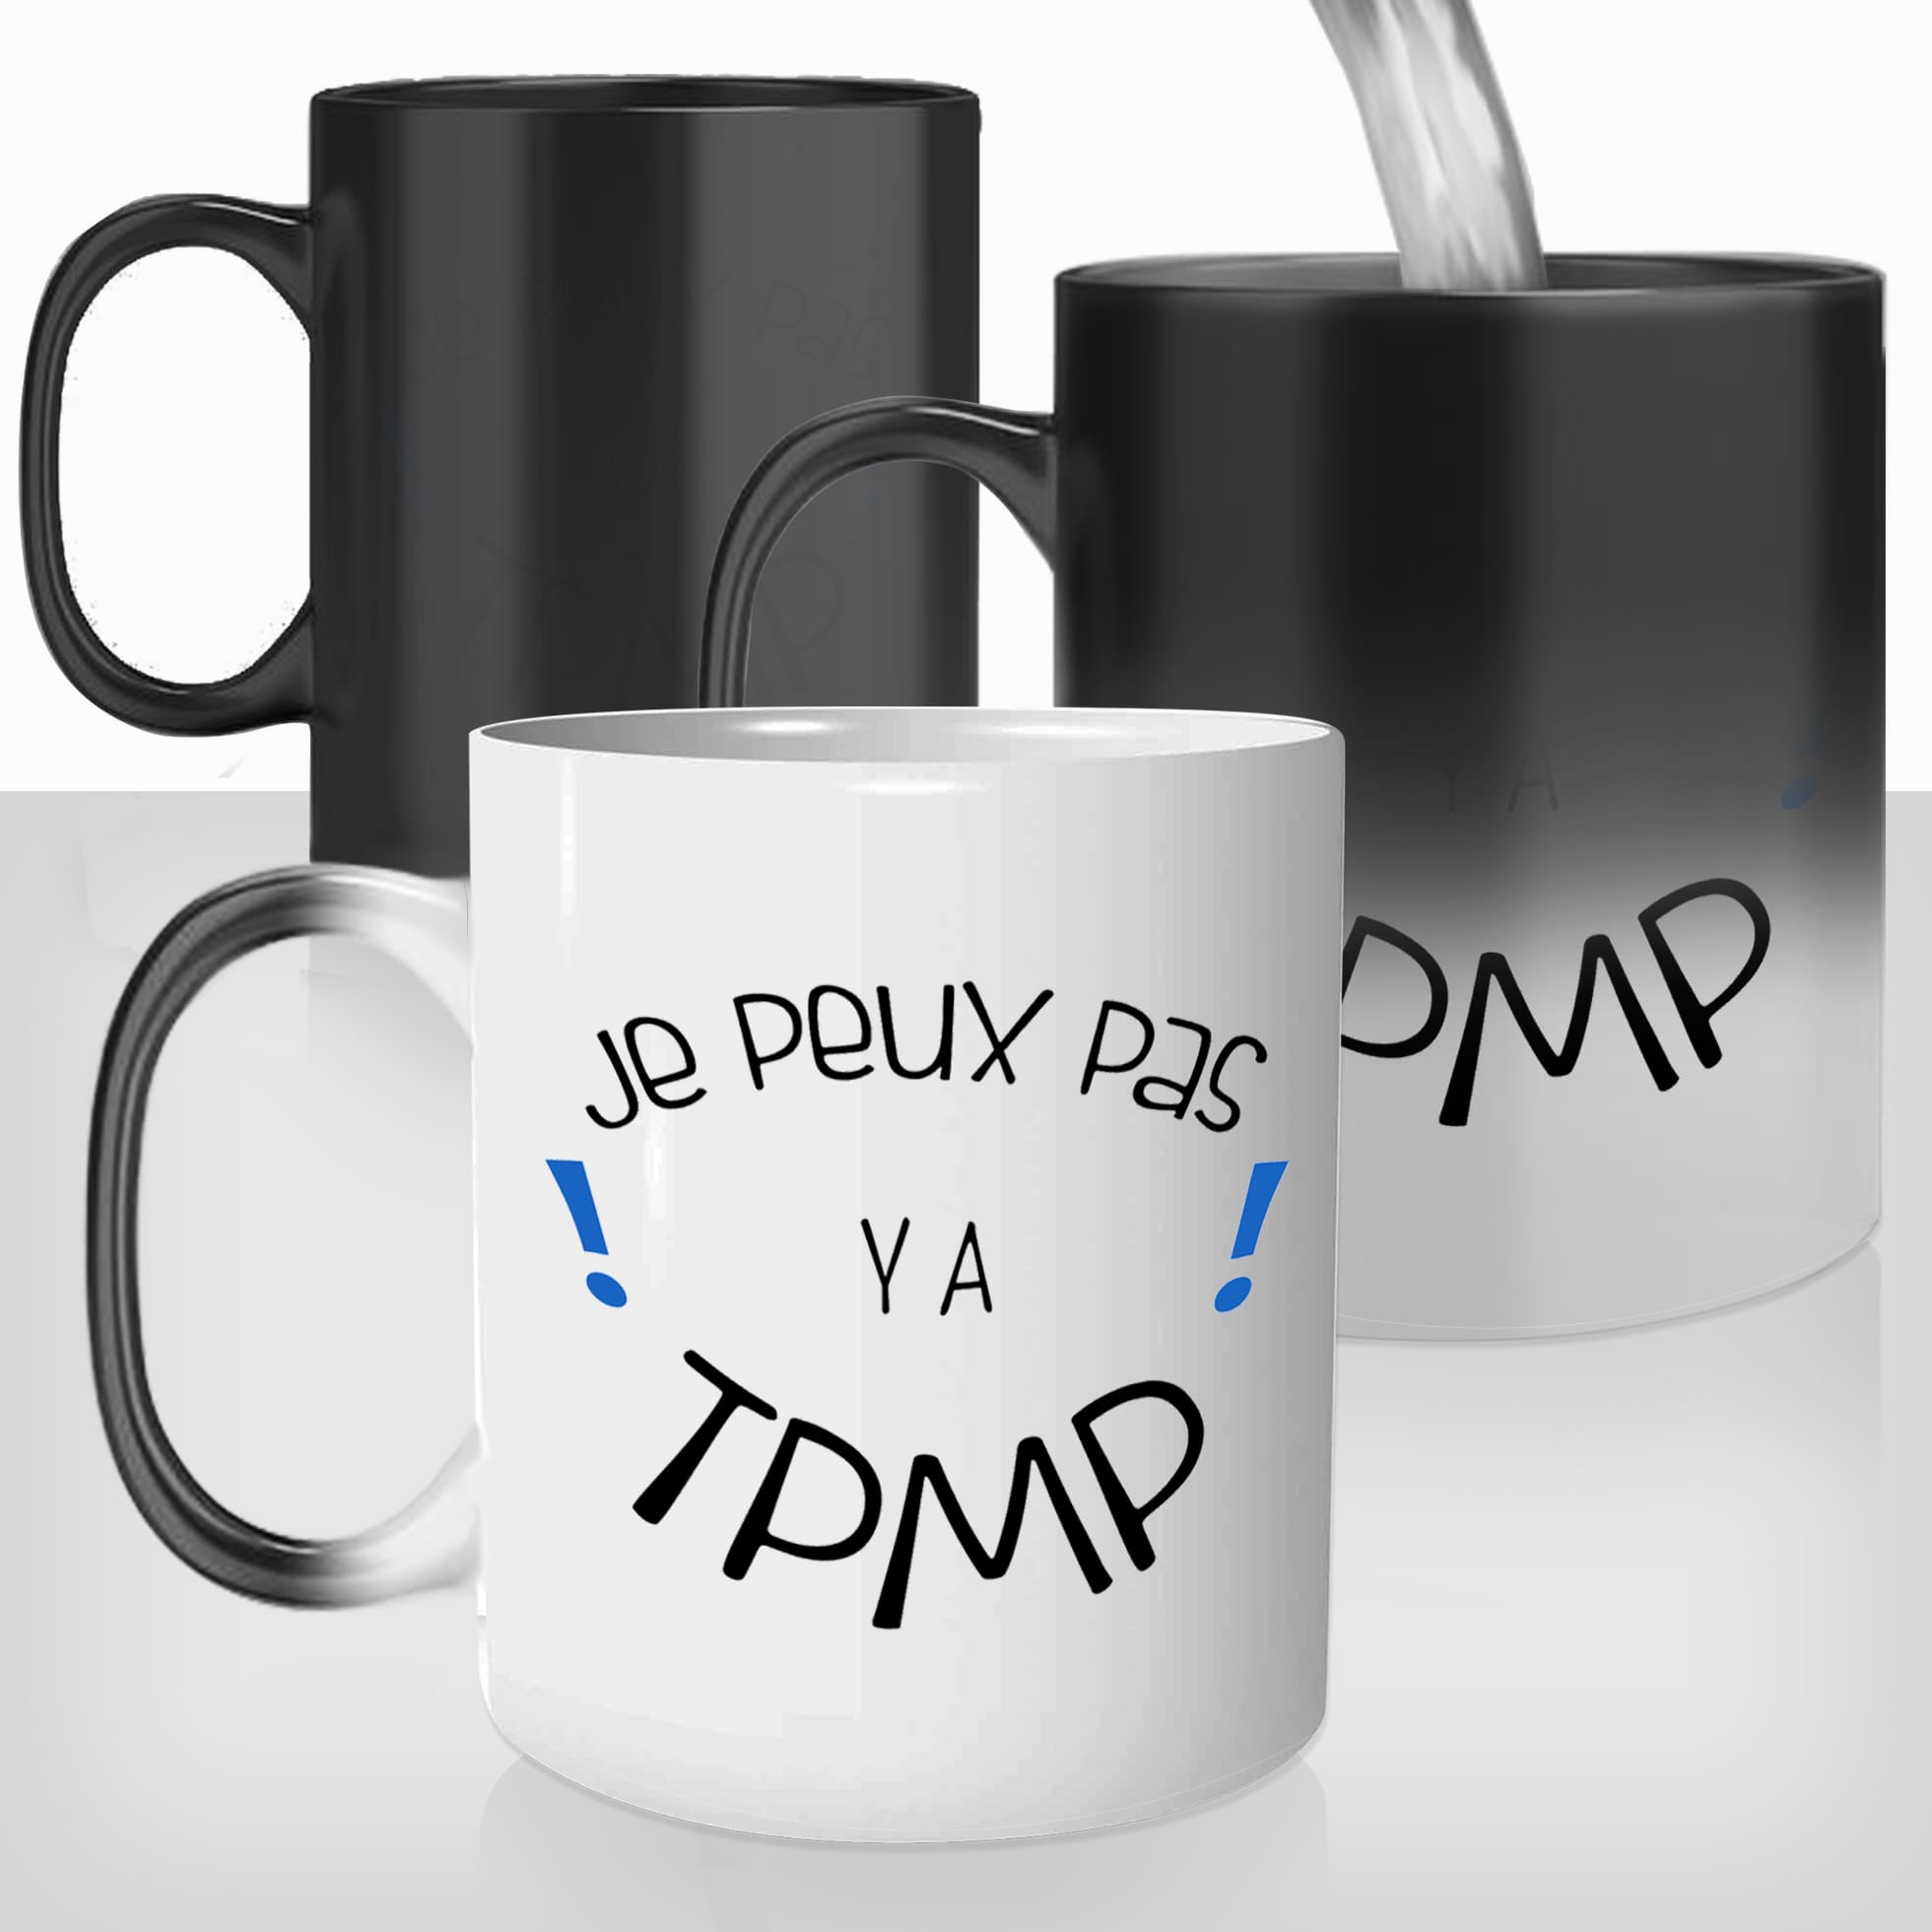 mug-magique-personnalisé-tasse-thermo-reactif-thermique-jpeux-pas-tpmp-touvhe-pas-mon-poste-emission-prenom-personnalisable-cadeau